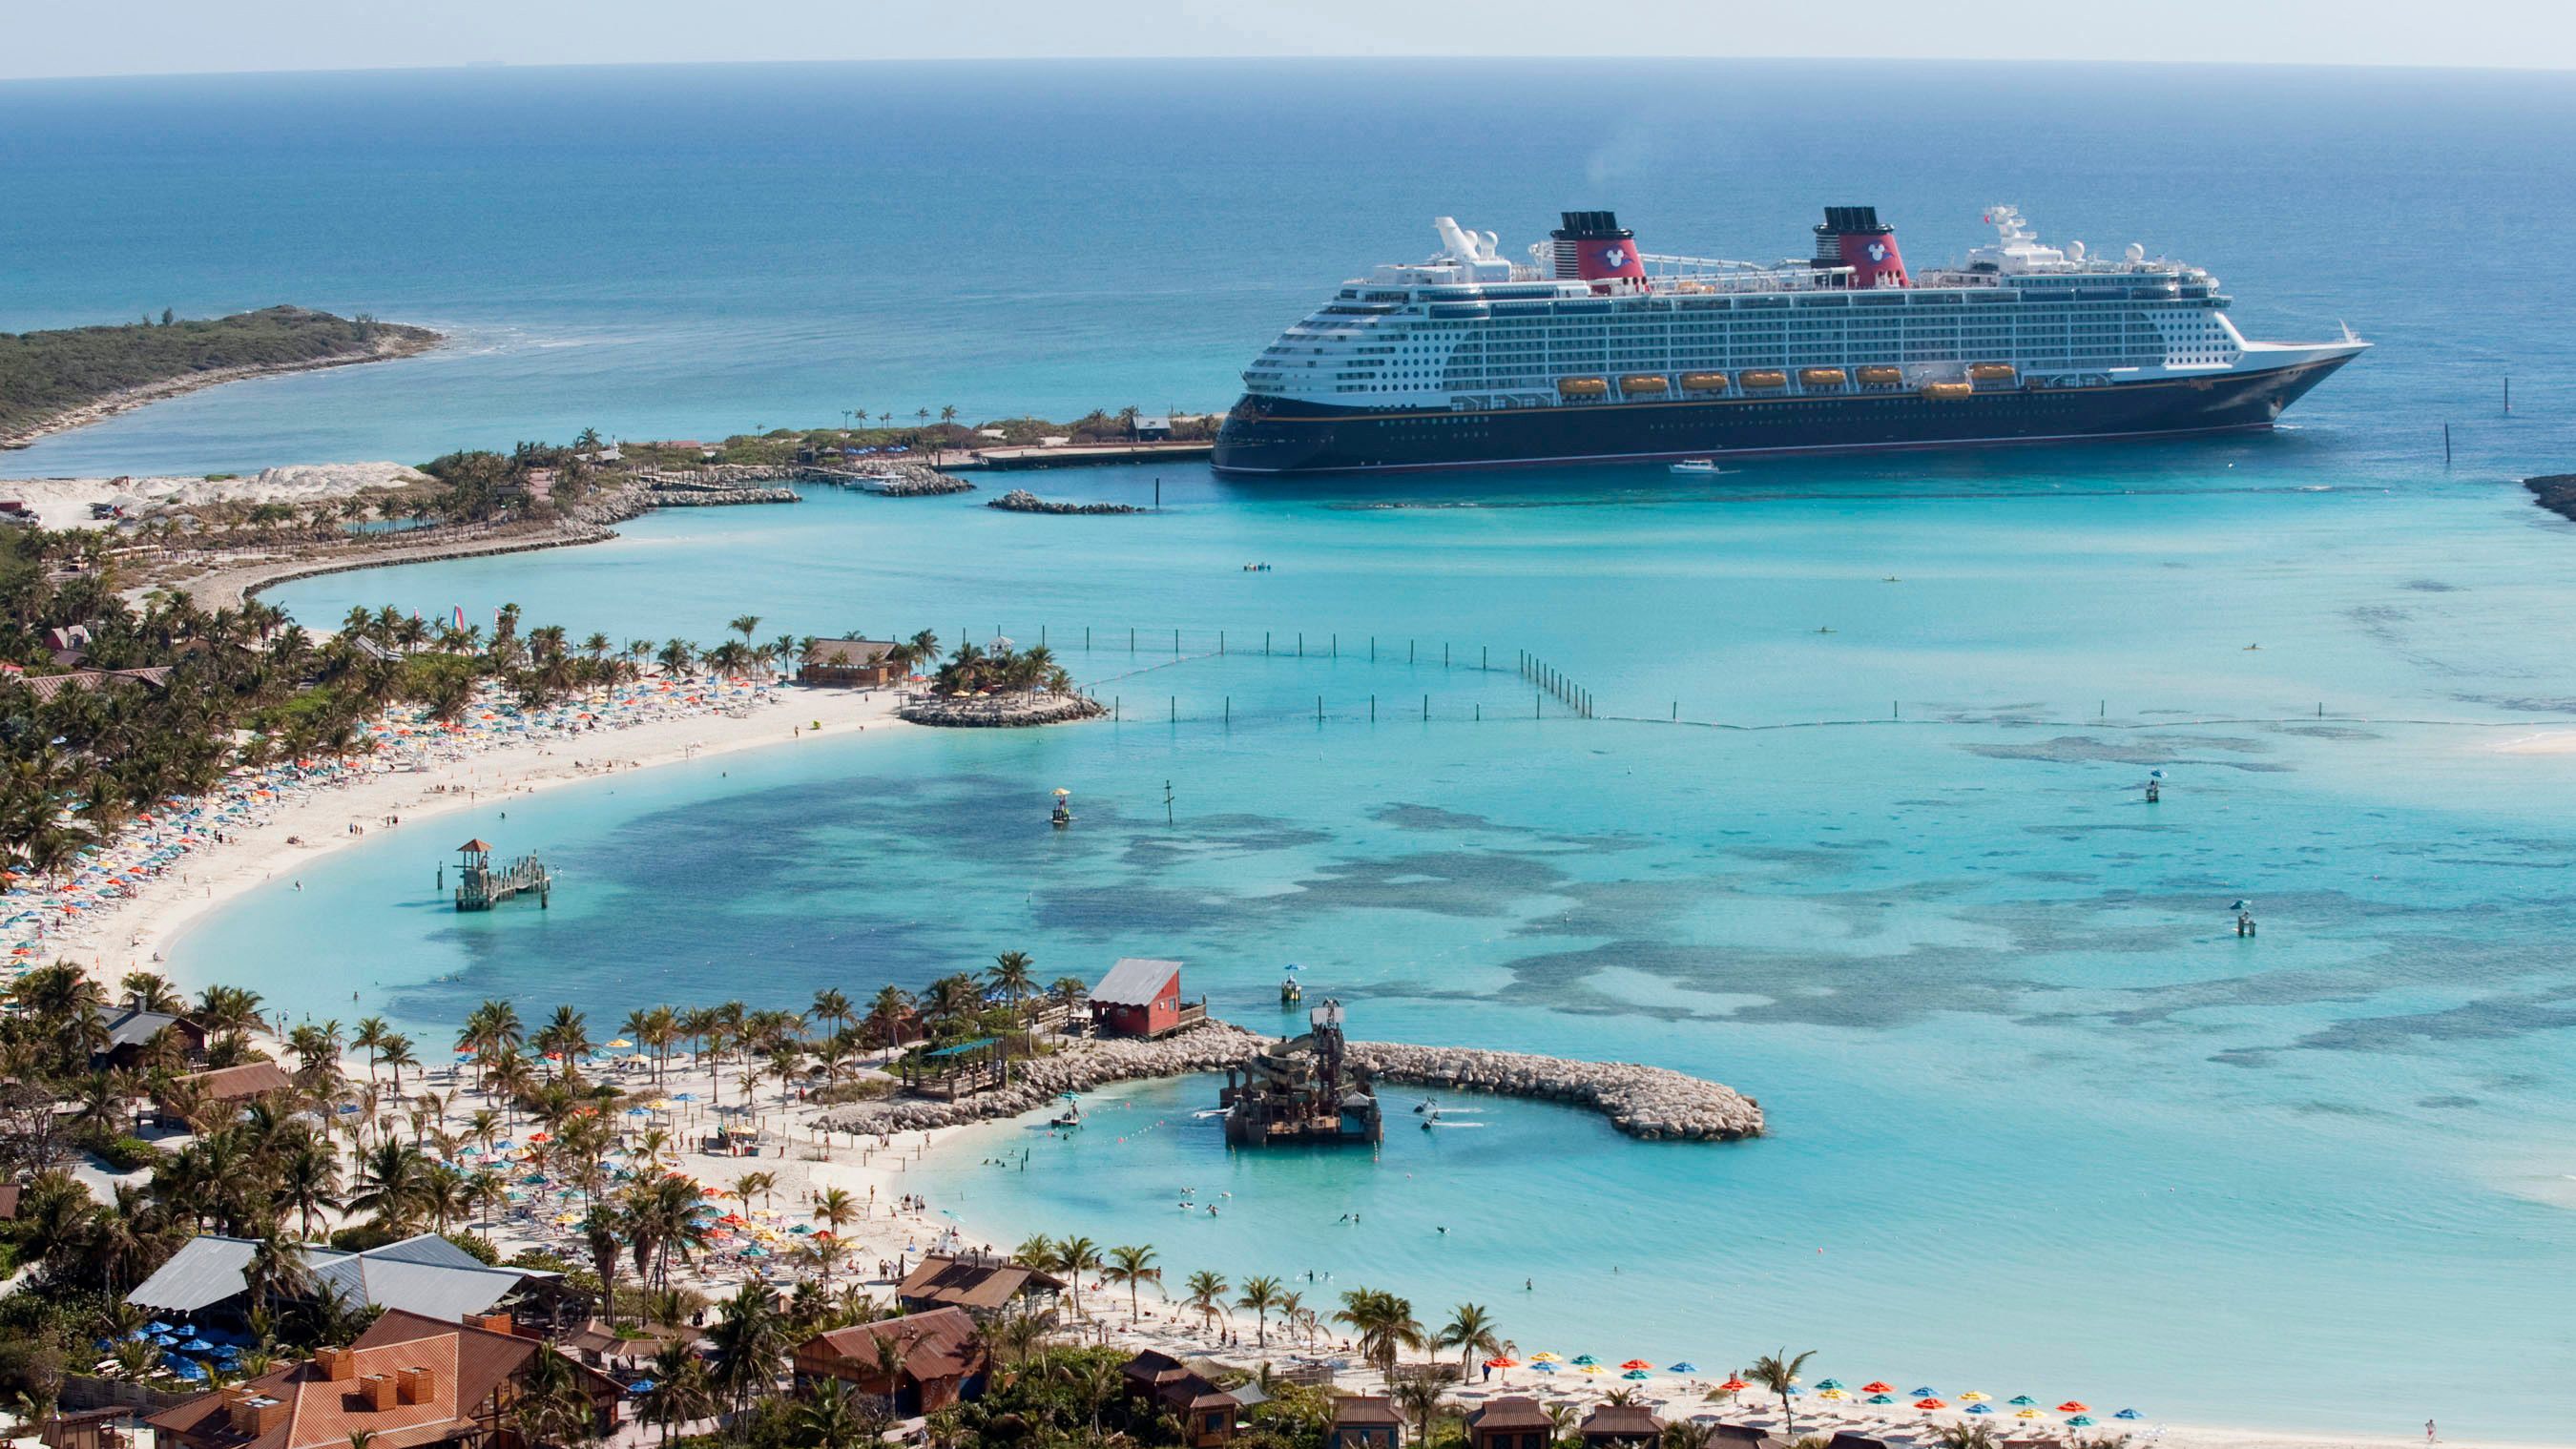 Disney Dream at Castaway Cay in the Bahamas